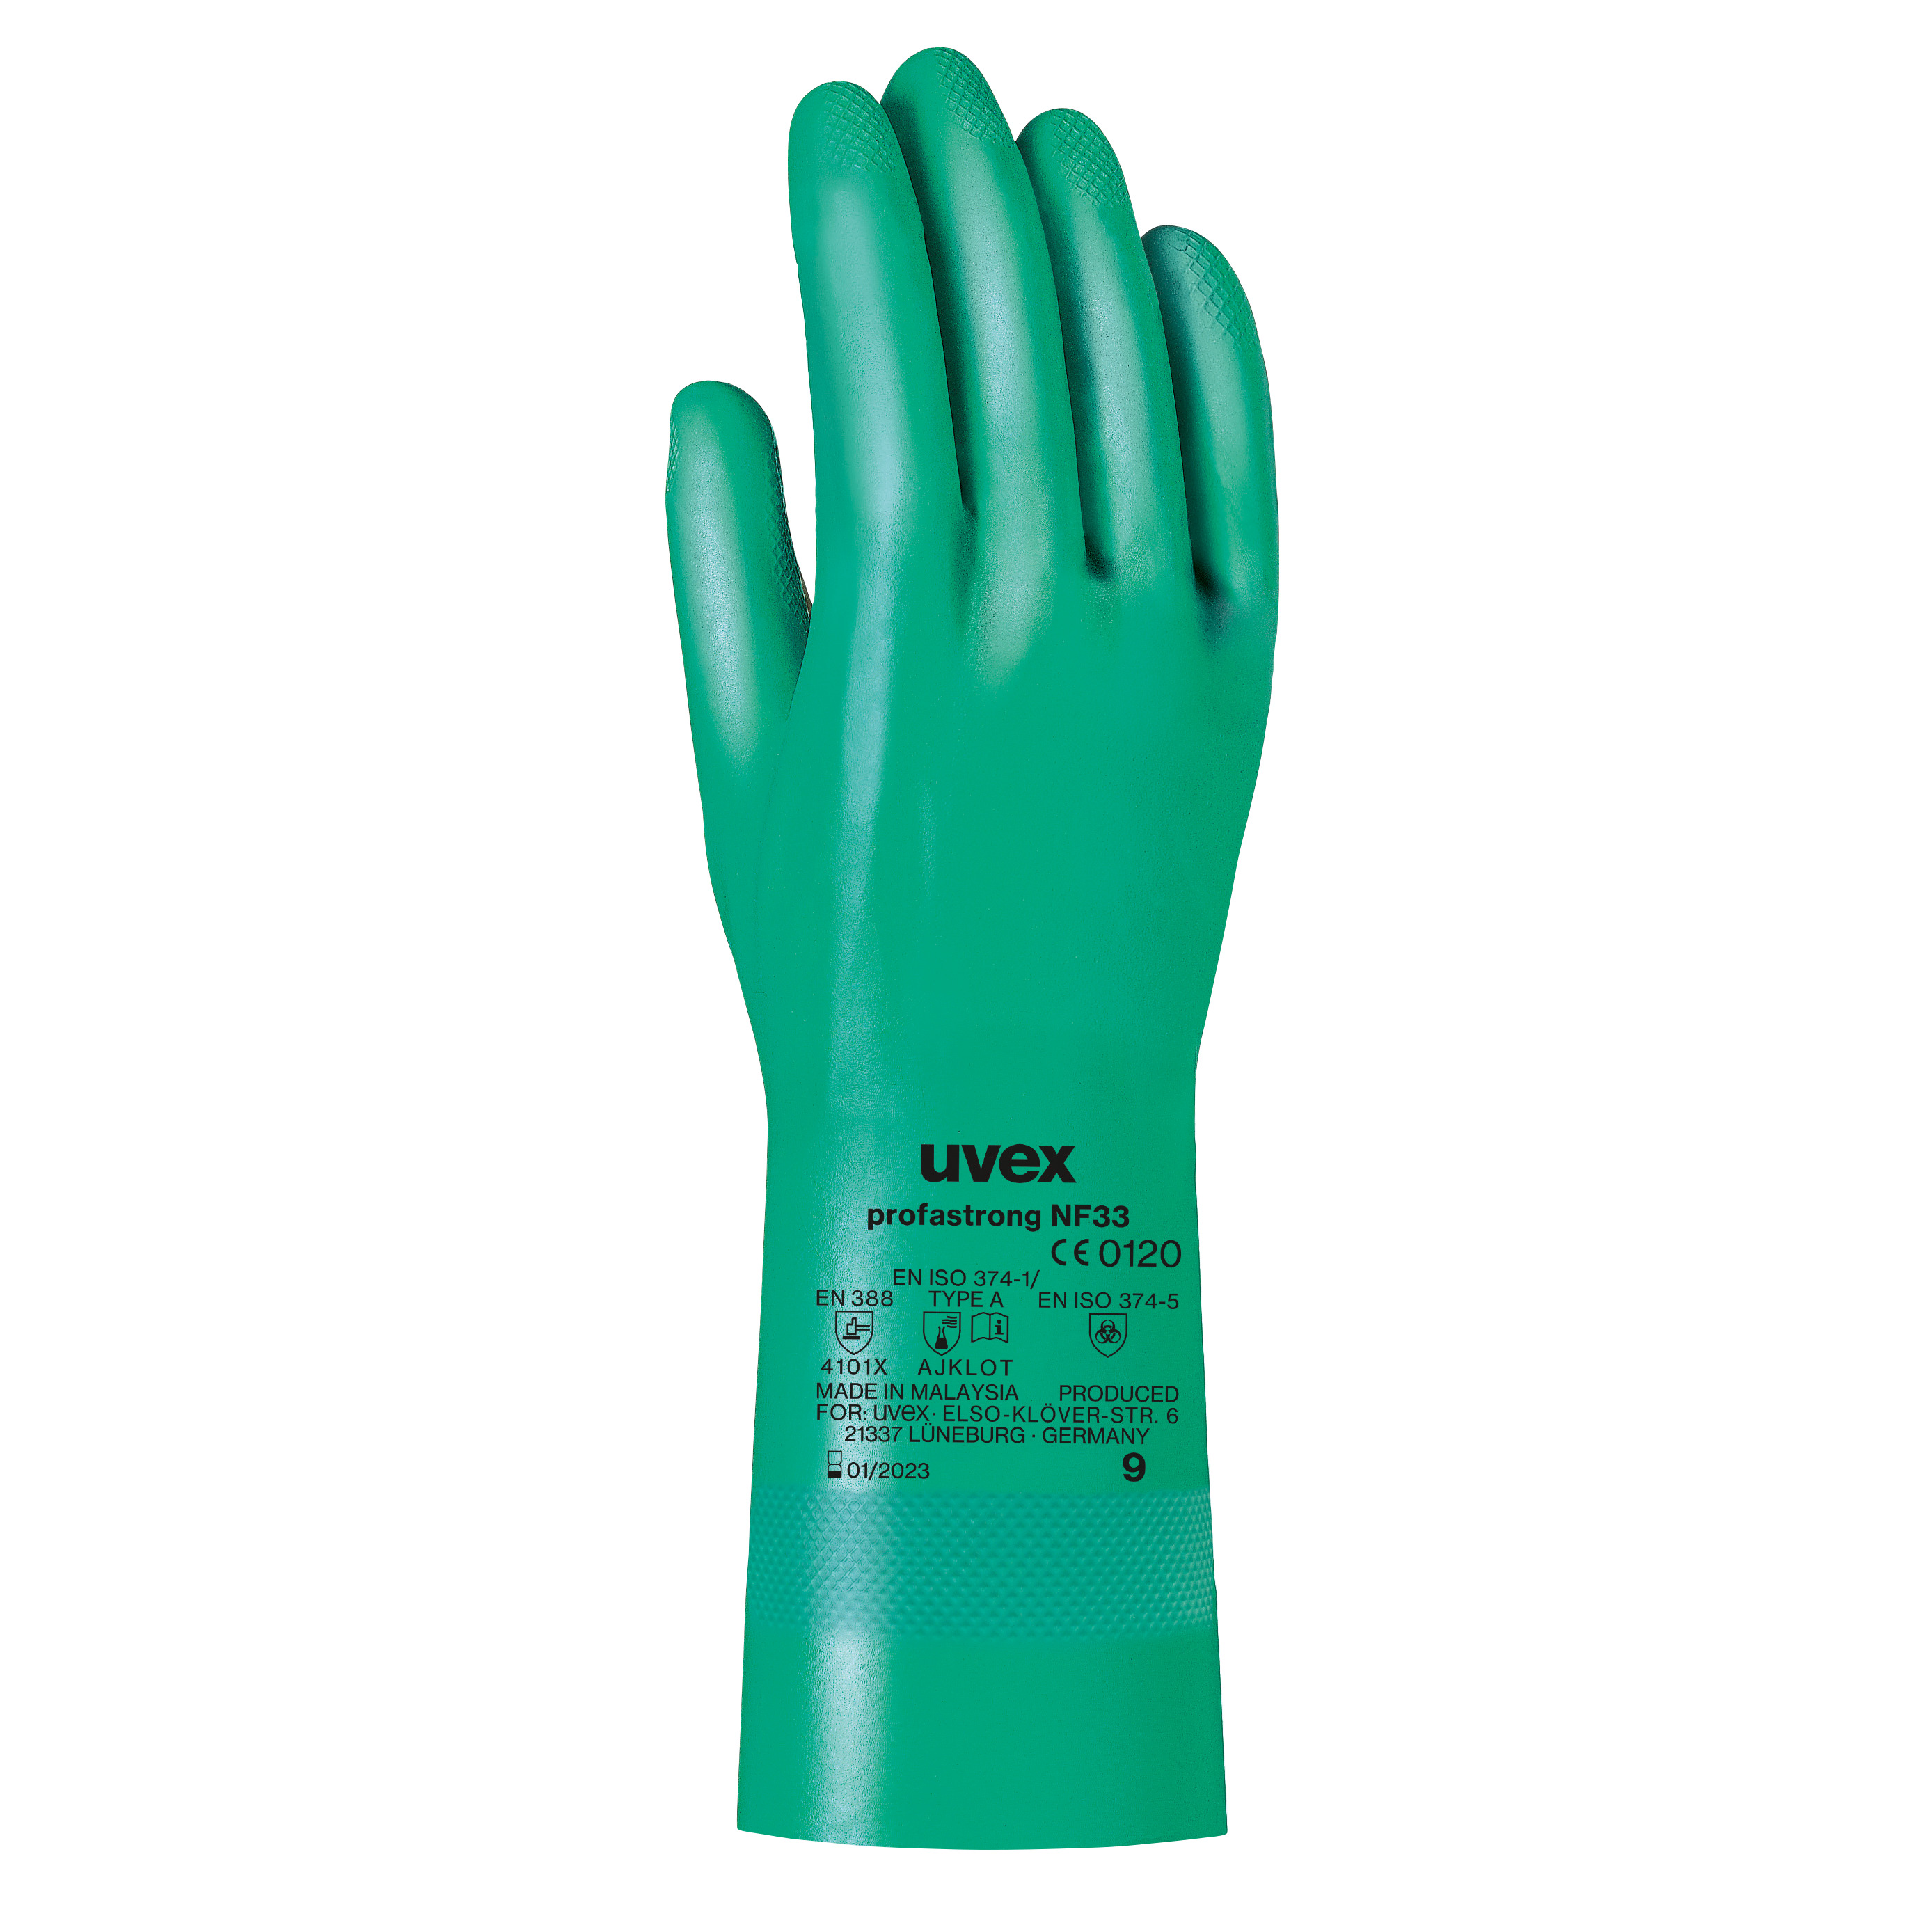 uvex profastrong NF33 Chemikalienschutzhandschuhe, Größe 10